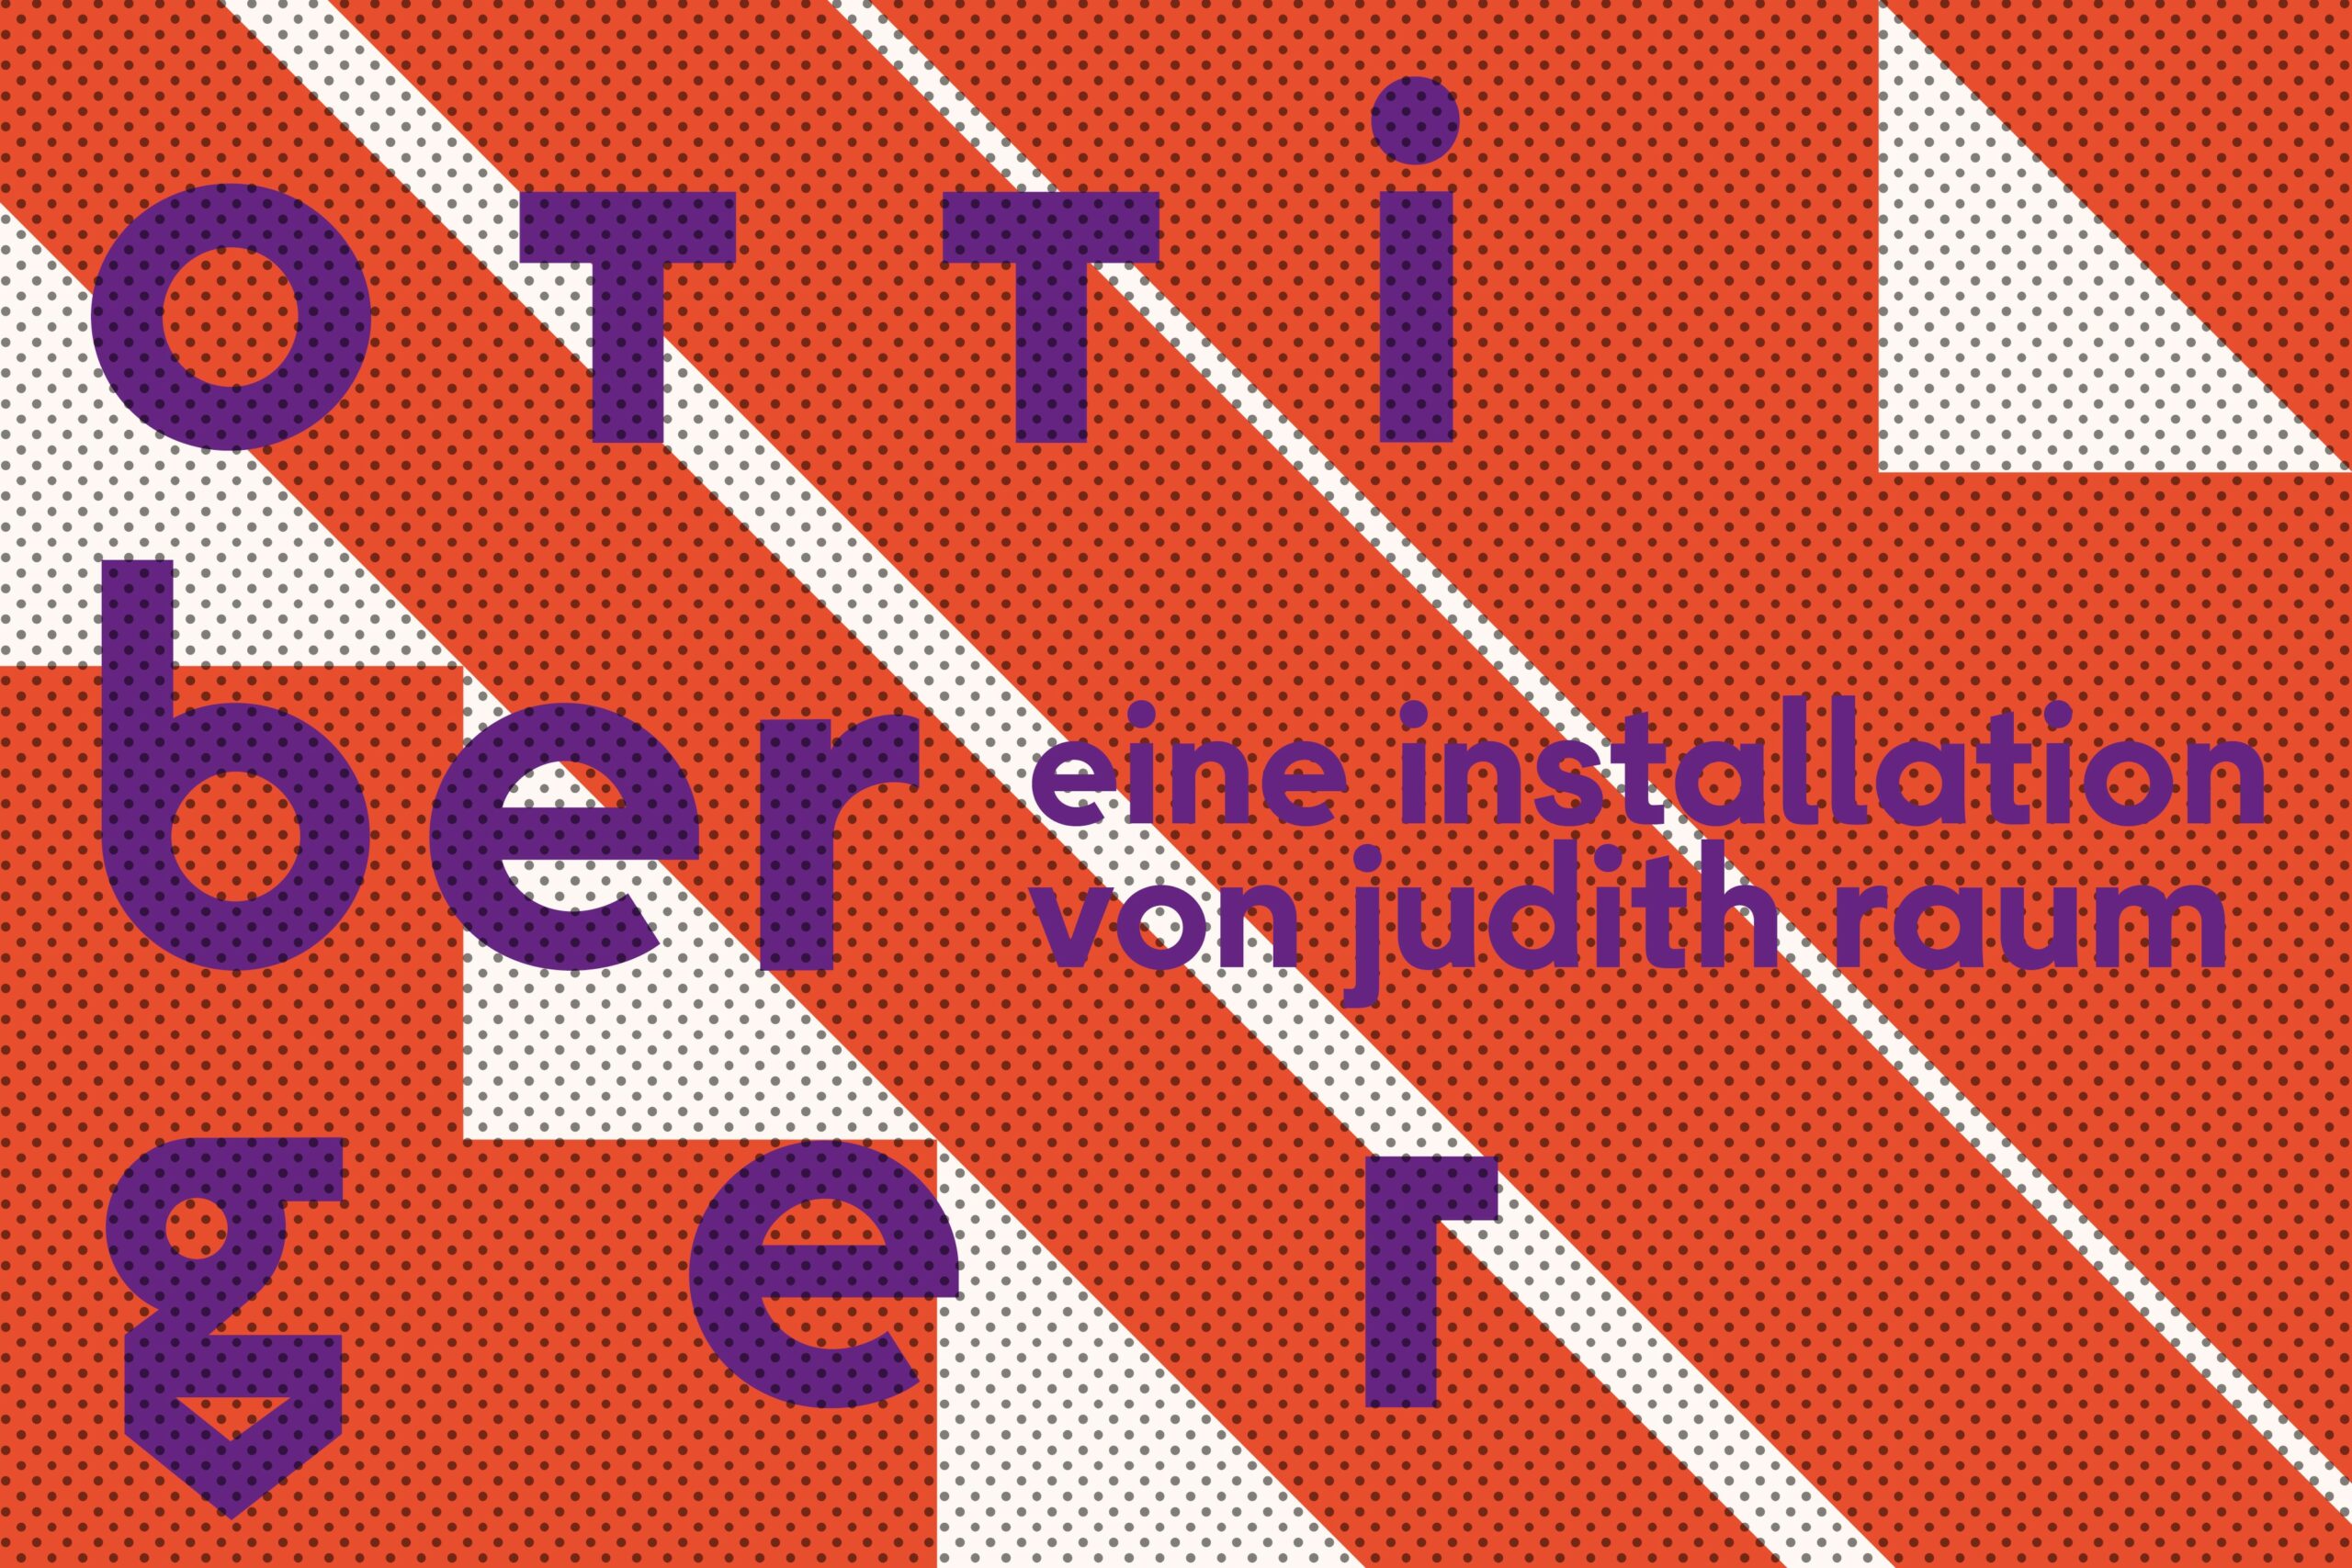 Ausstellungsgrafik "Otti Berger". Grafik: Bauhaus-Archiv